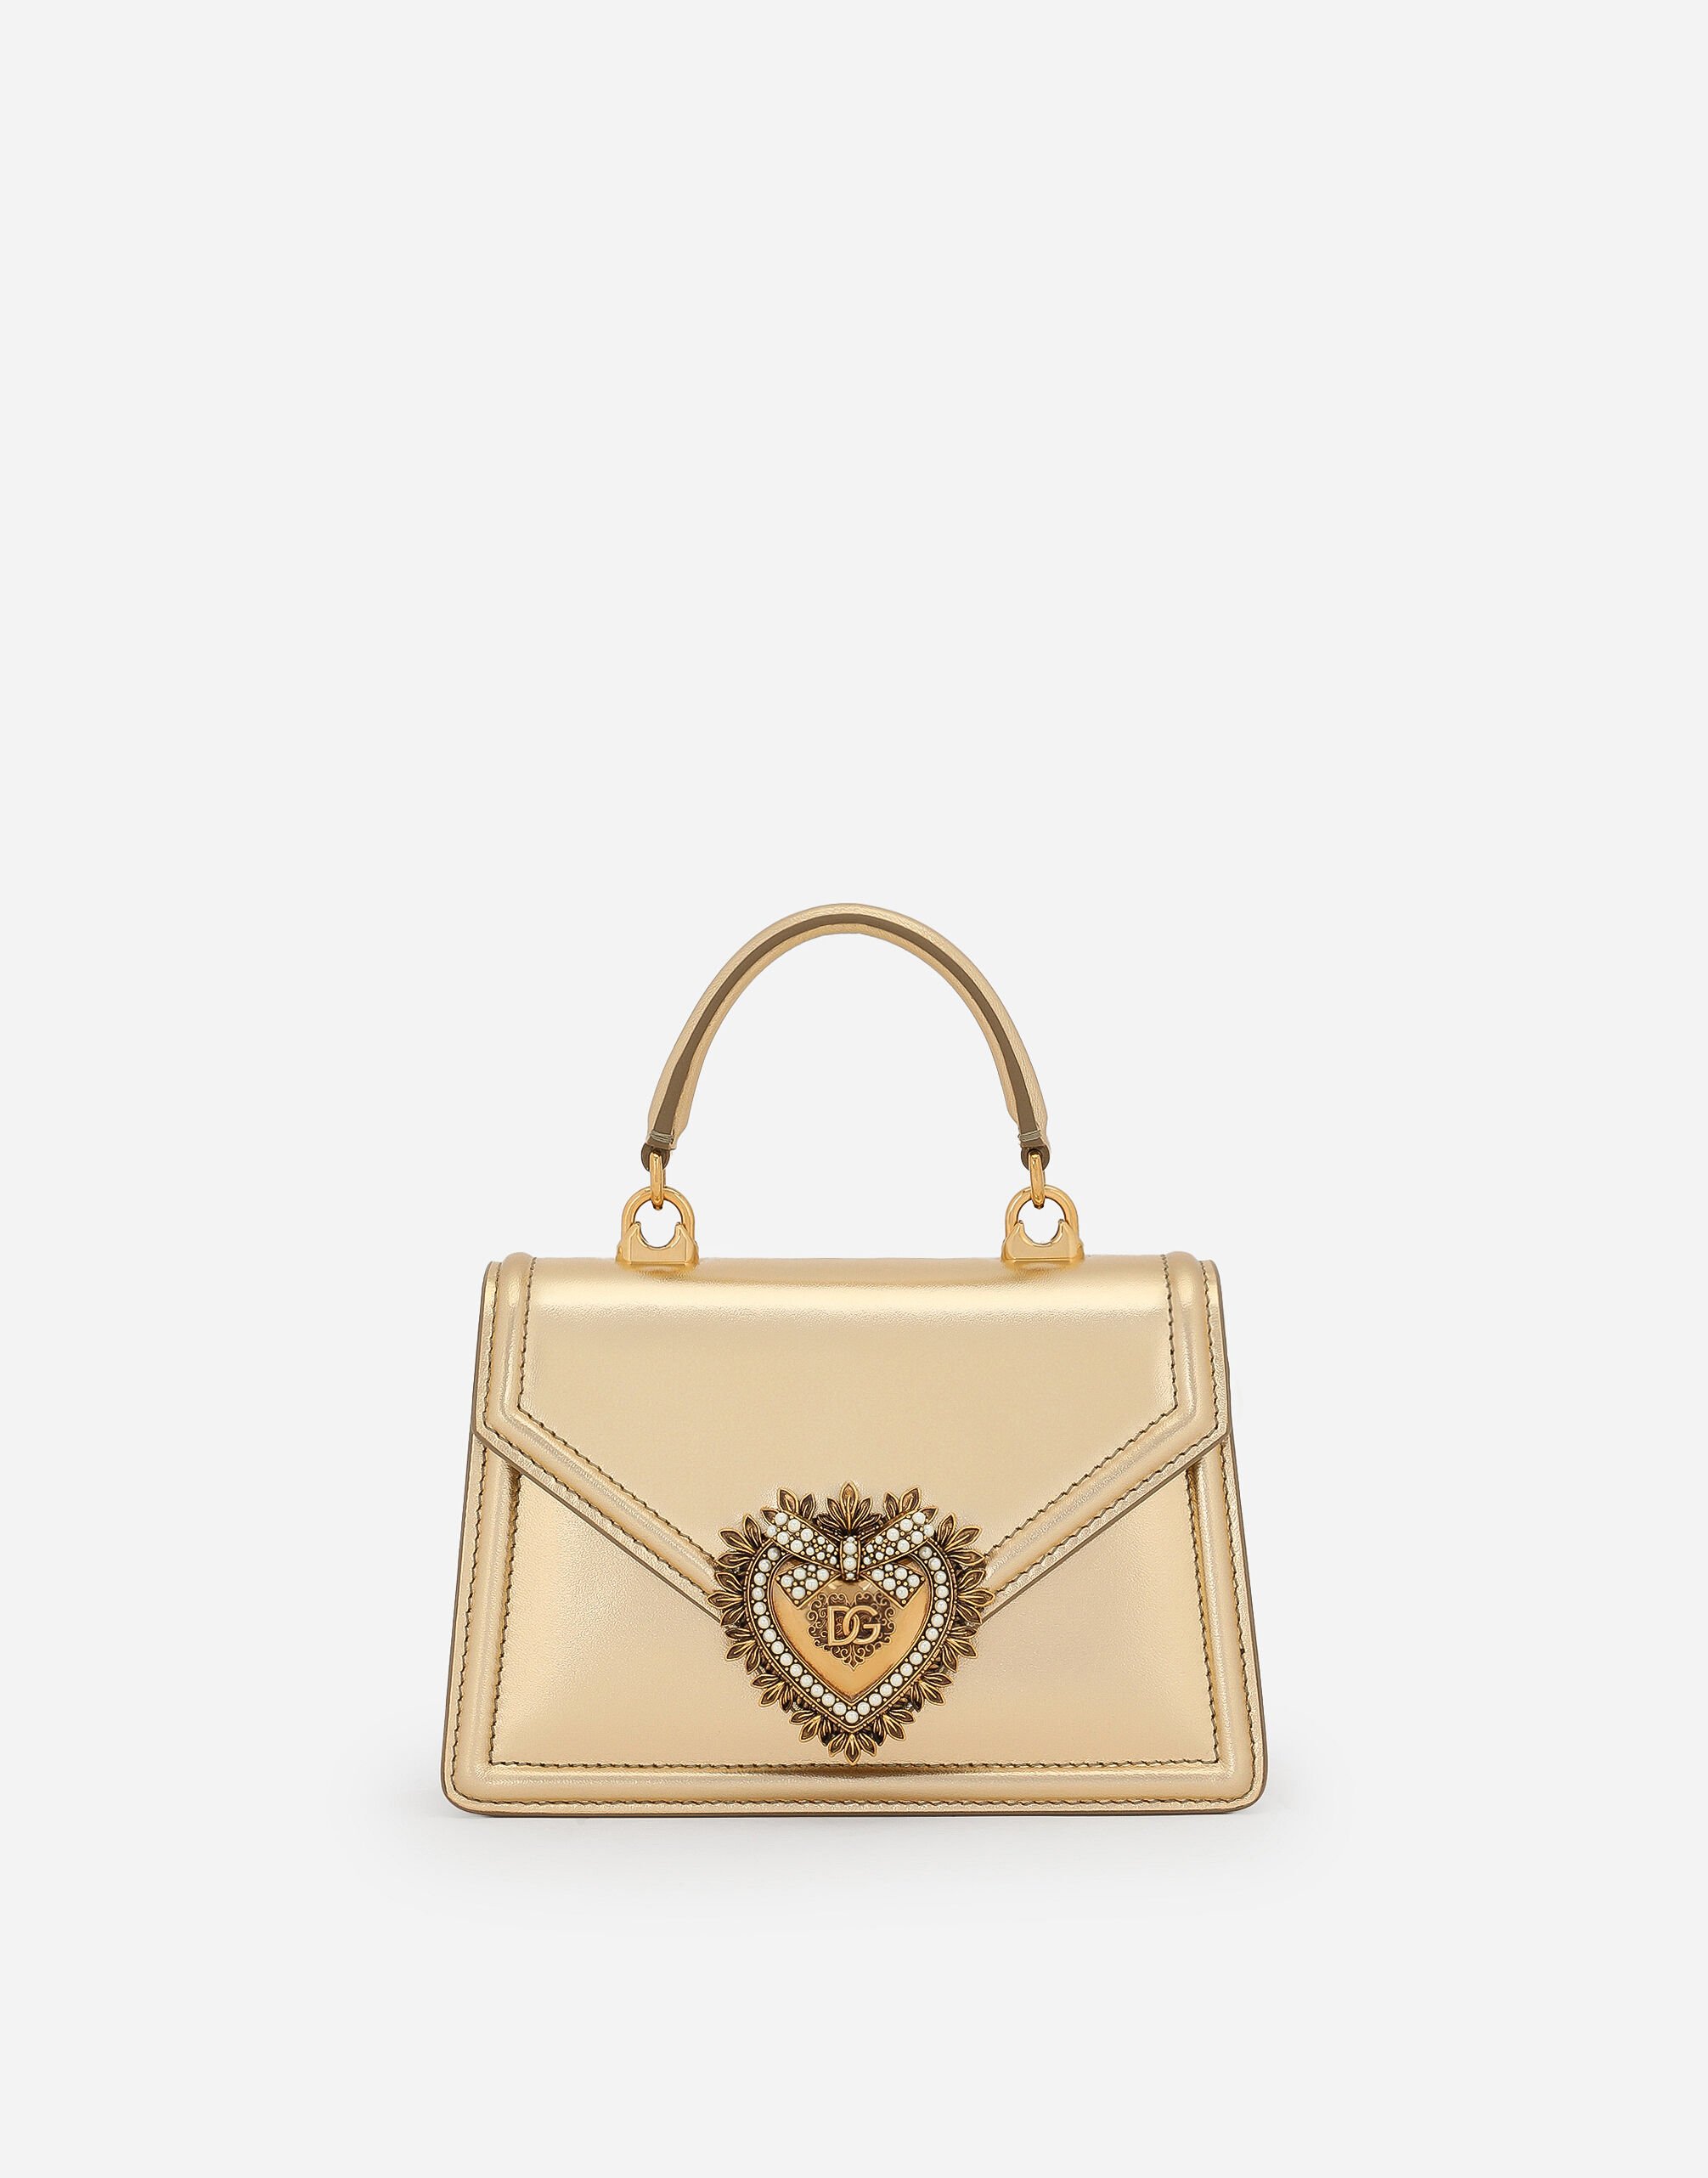 Dolce & Gabbana Small Devotion bag in nappa mordore leather Multicolor BB2211AW384